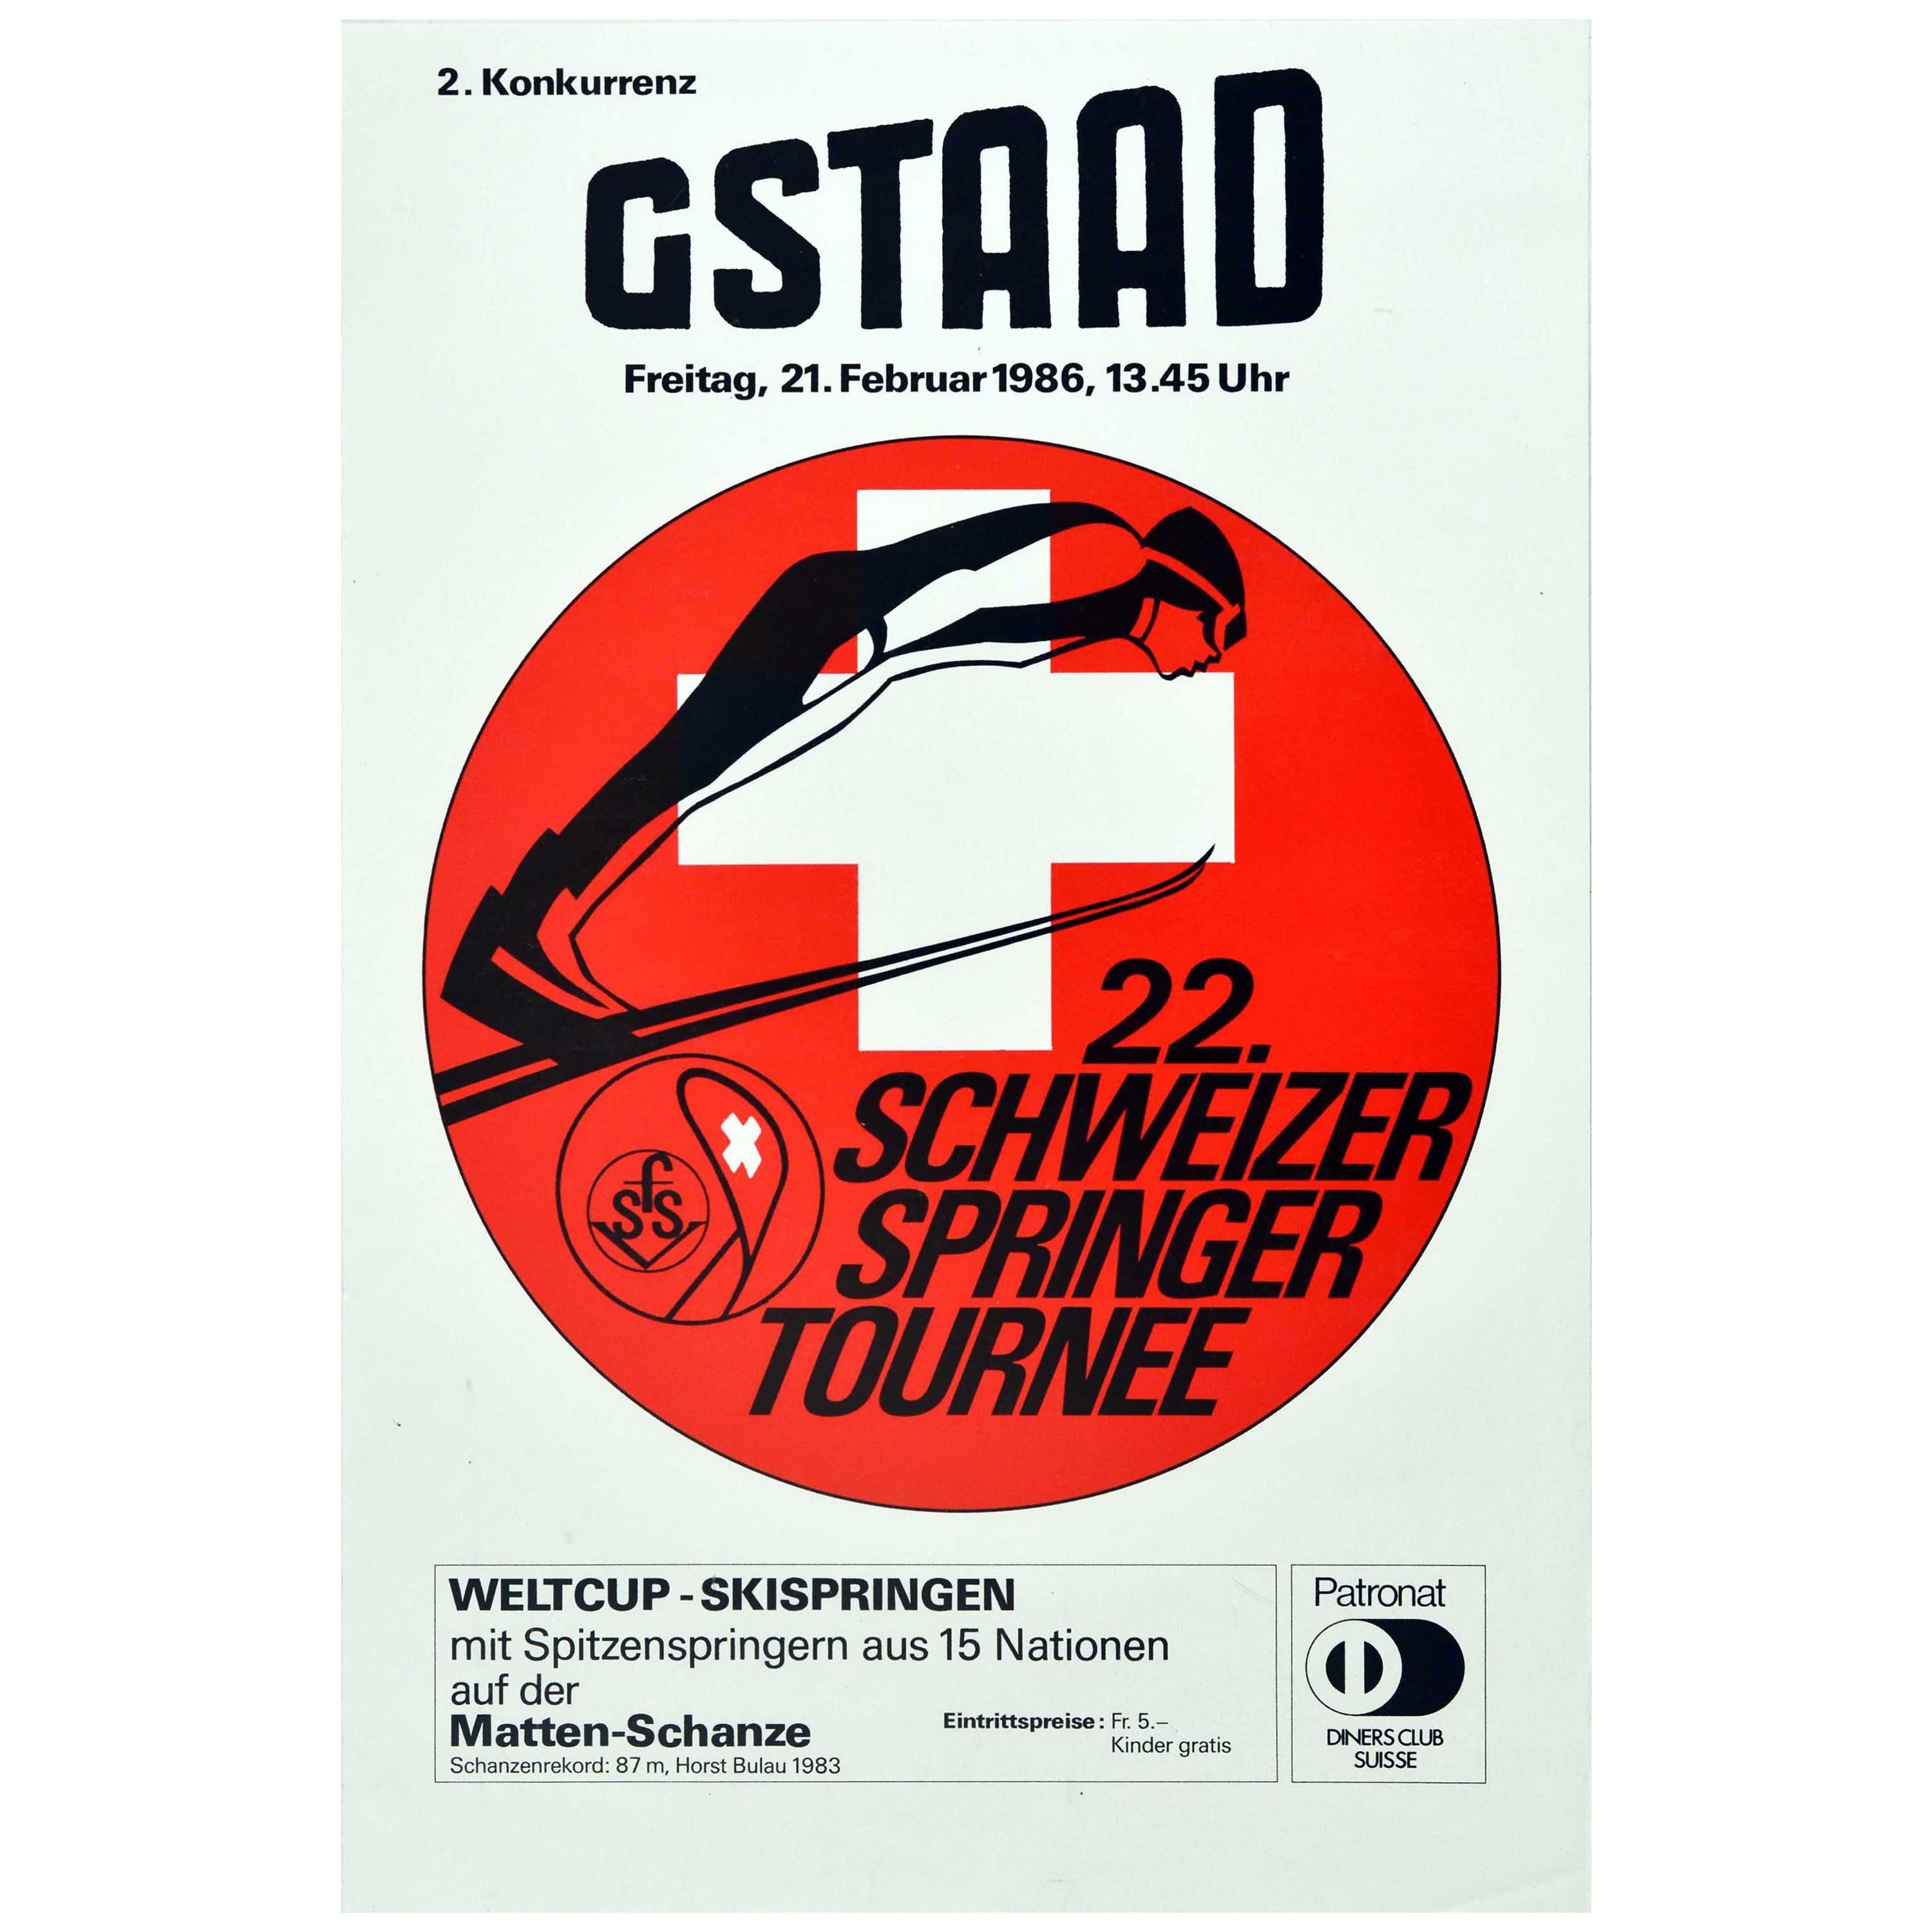 Affiche rétro originale de sport d'hiver, Gstaad Schweizer Springer Tournee Ski Jump en vente